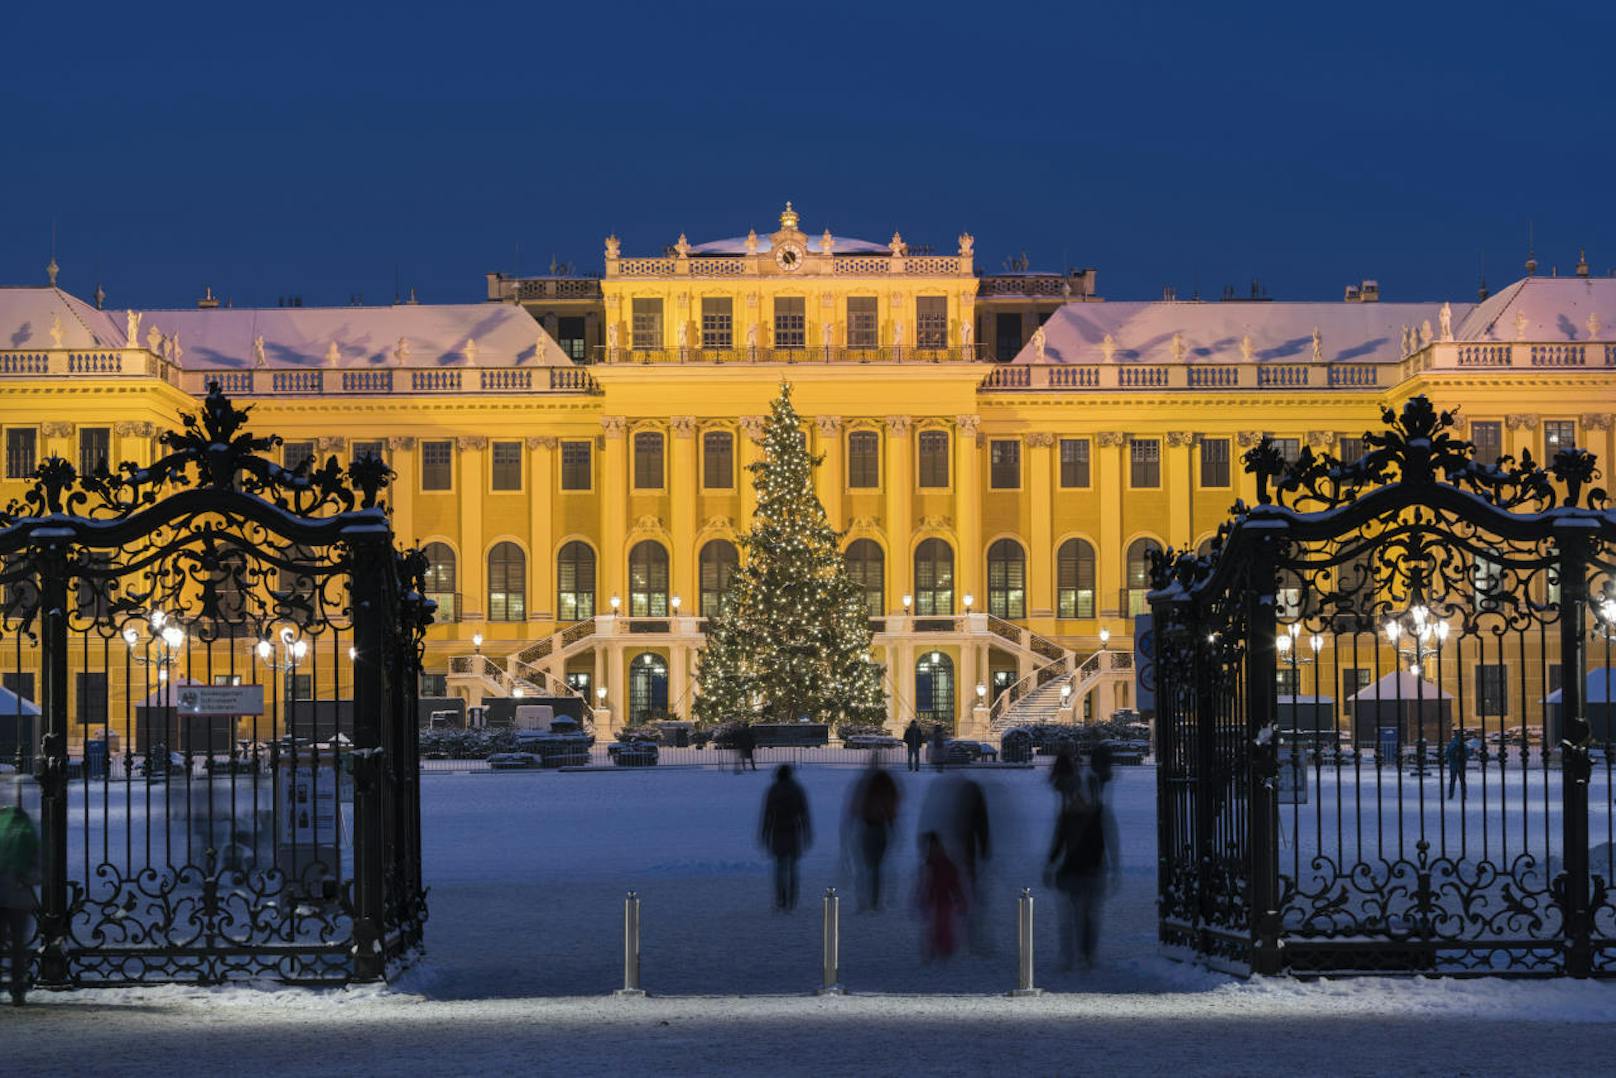 Zuvor, also in den Jahren 1985, 1984, 1983, 1982, gab es ebenfalls keine weiße Weihnachten in Wien. Erst im Jahr 1981 wieder.